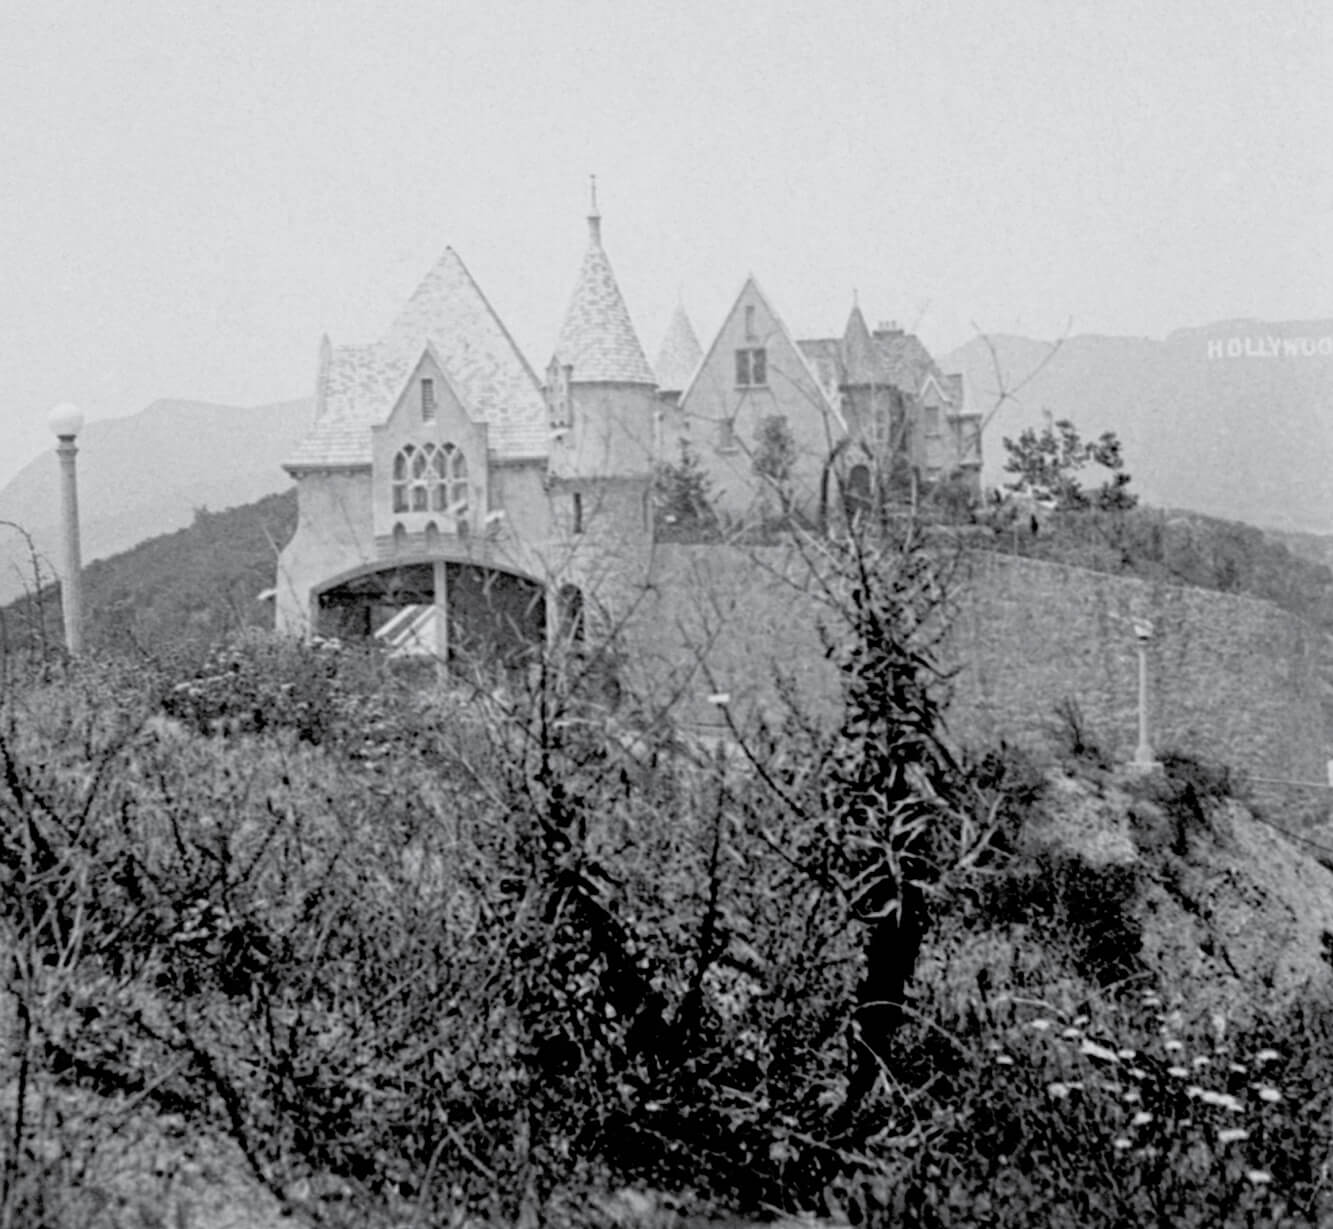 Friedrich Wilhelm Murnau, photograph of Wolf’s Lair, Hollywood Hills, ca. 1928–1929. Courtesy Deutsche Kinemathek—Sammlung Murnau.